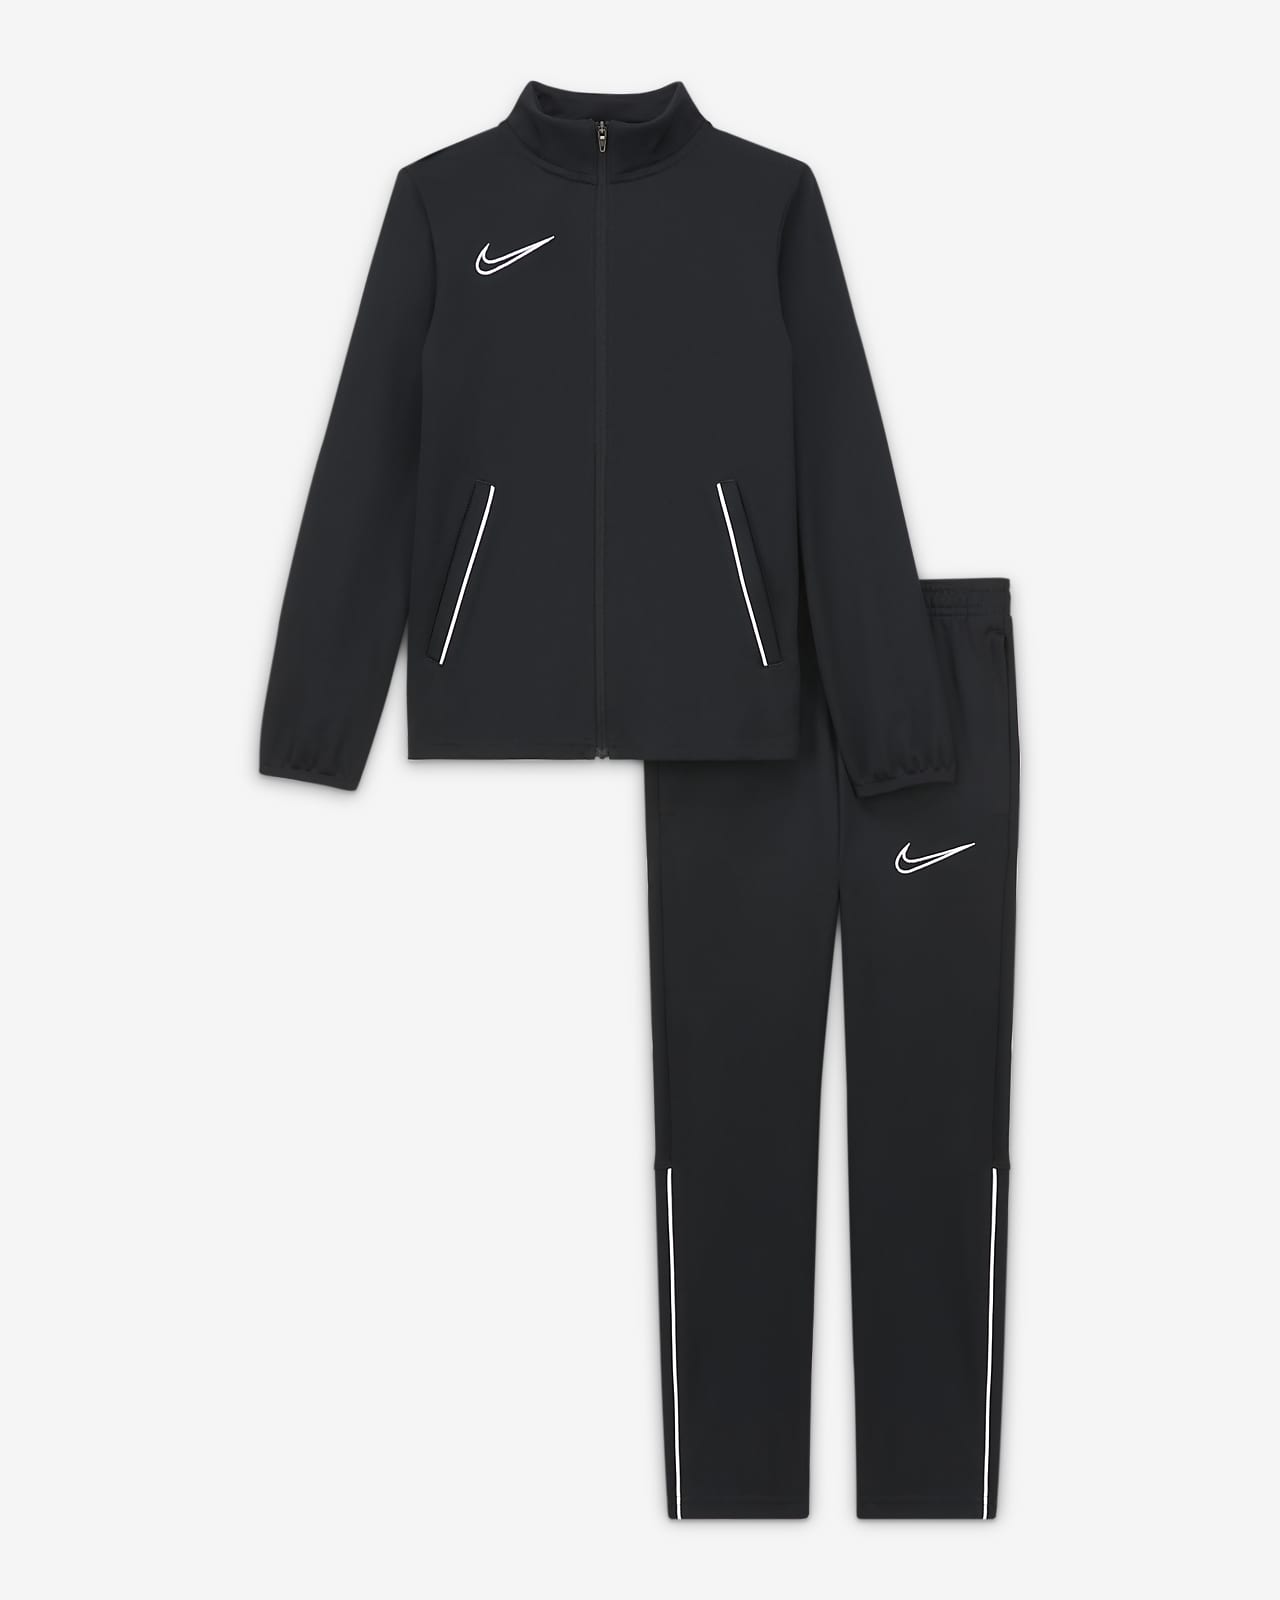 Nike公式 ナイキ Dri Fit アカデミー ジュニア ニット サッカートラックスーツ オンラインストア 通販サイト